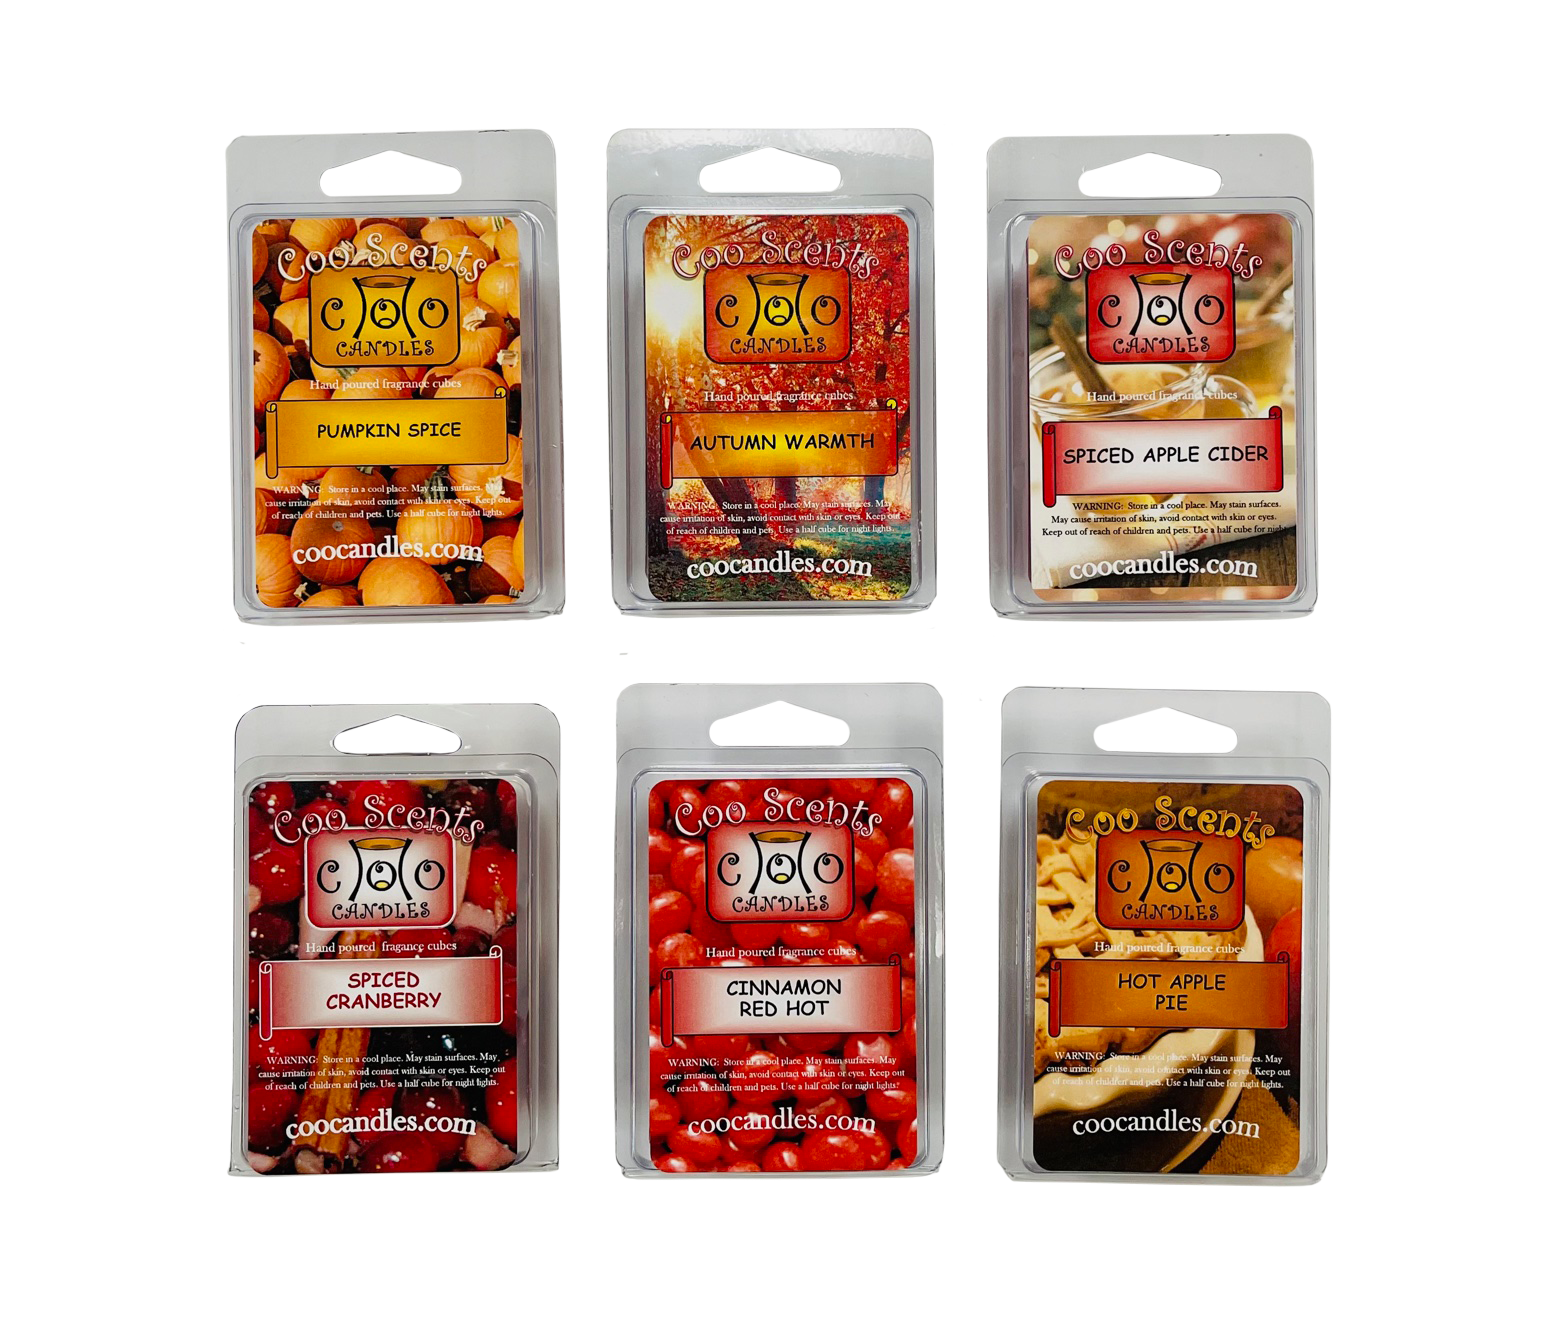 Cinnamon Candle Melts | Fragrant Soy Wax Beeswax Tarts | Wax Melts